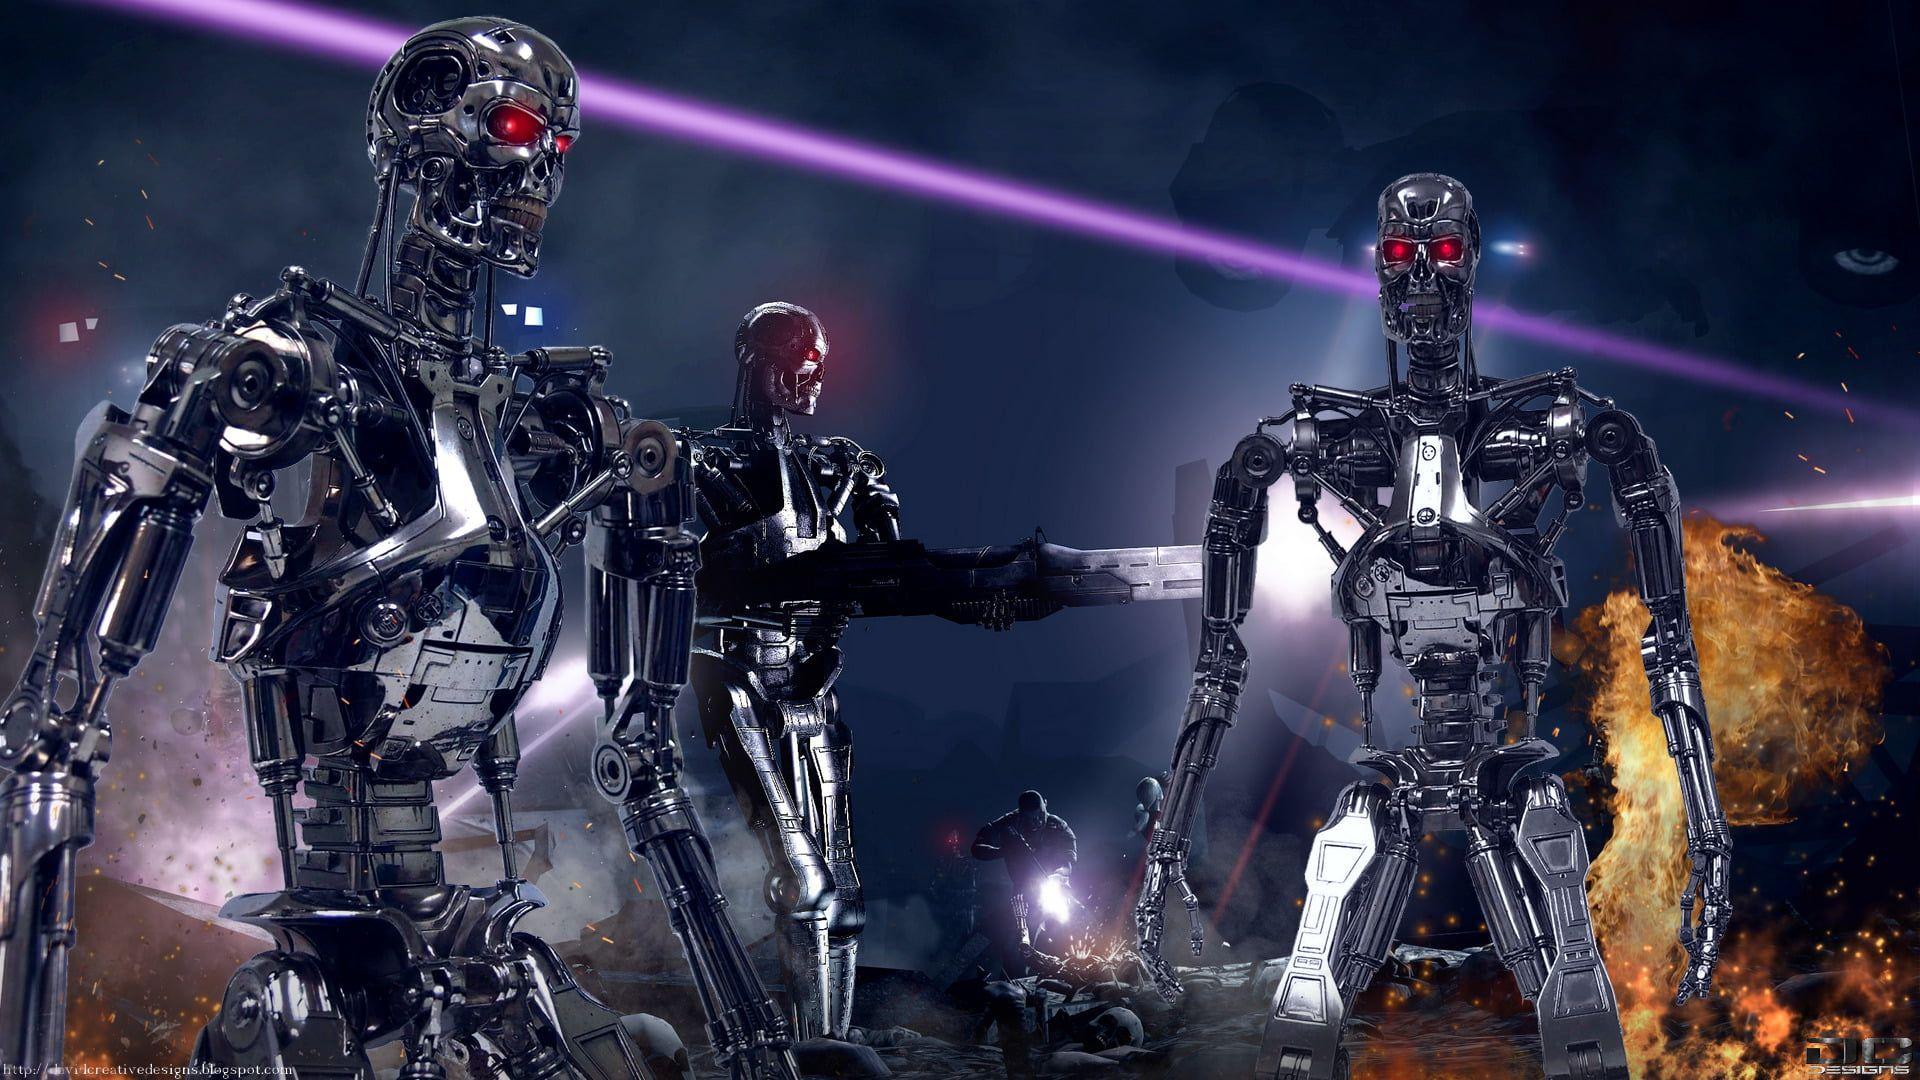 HD wallpaper: Terminator, The Terminator, Endoskeleton, T800